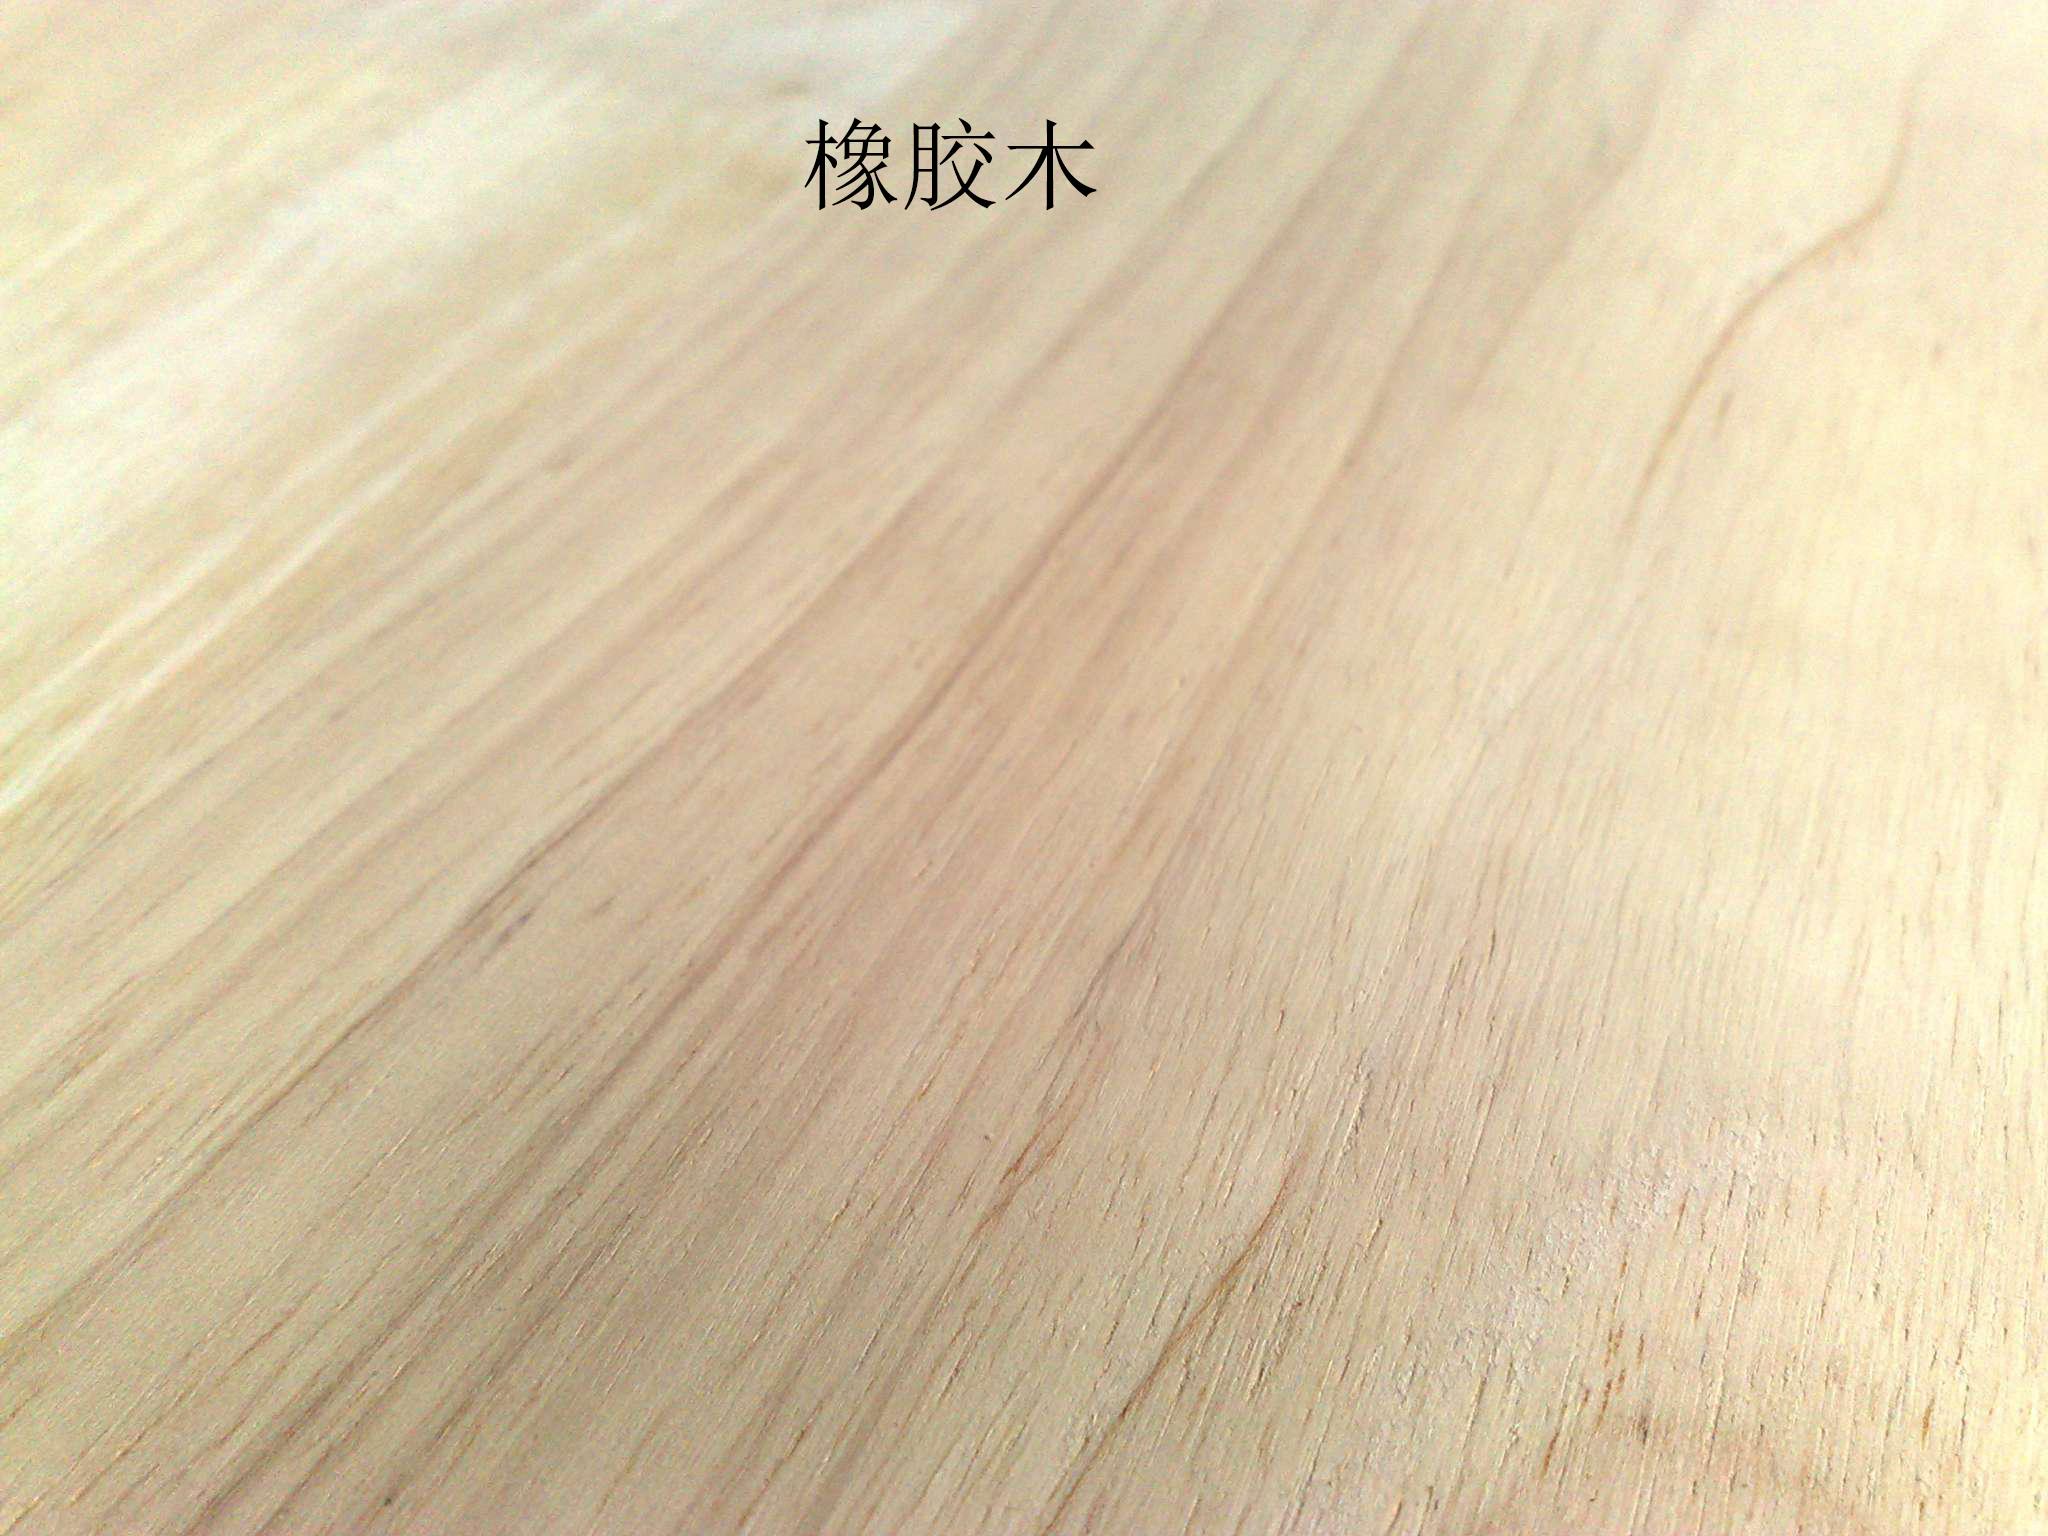 橡木-实木复合地板-安信地板官网-安信实木地热地板-实木复合地板-整木定制-地板加盟